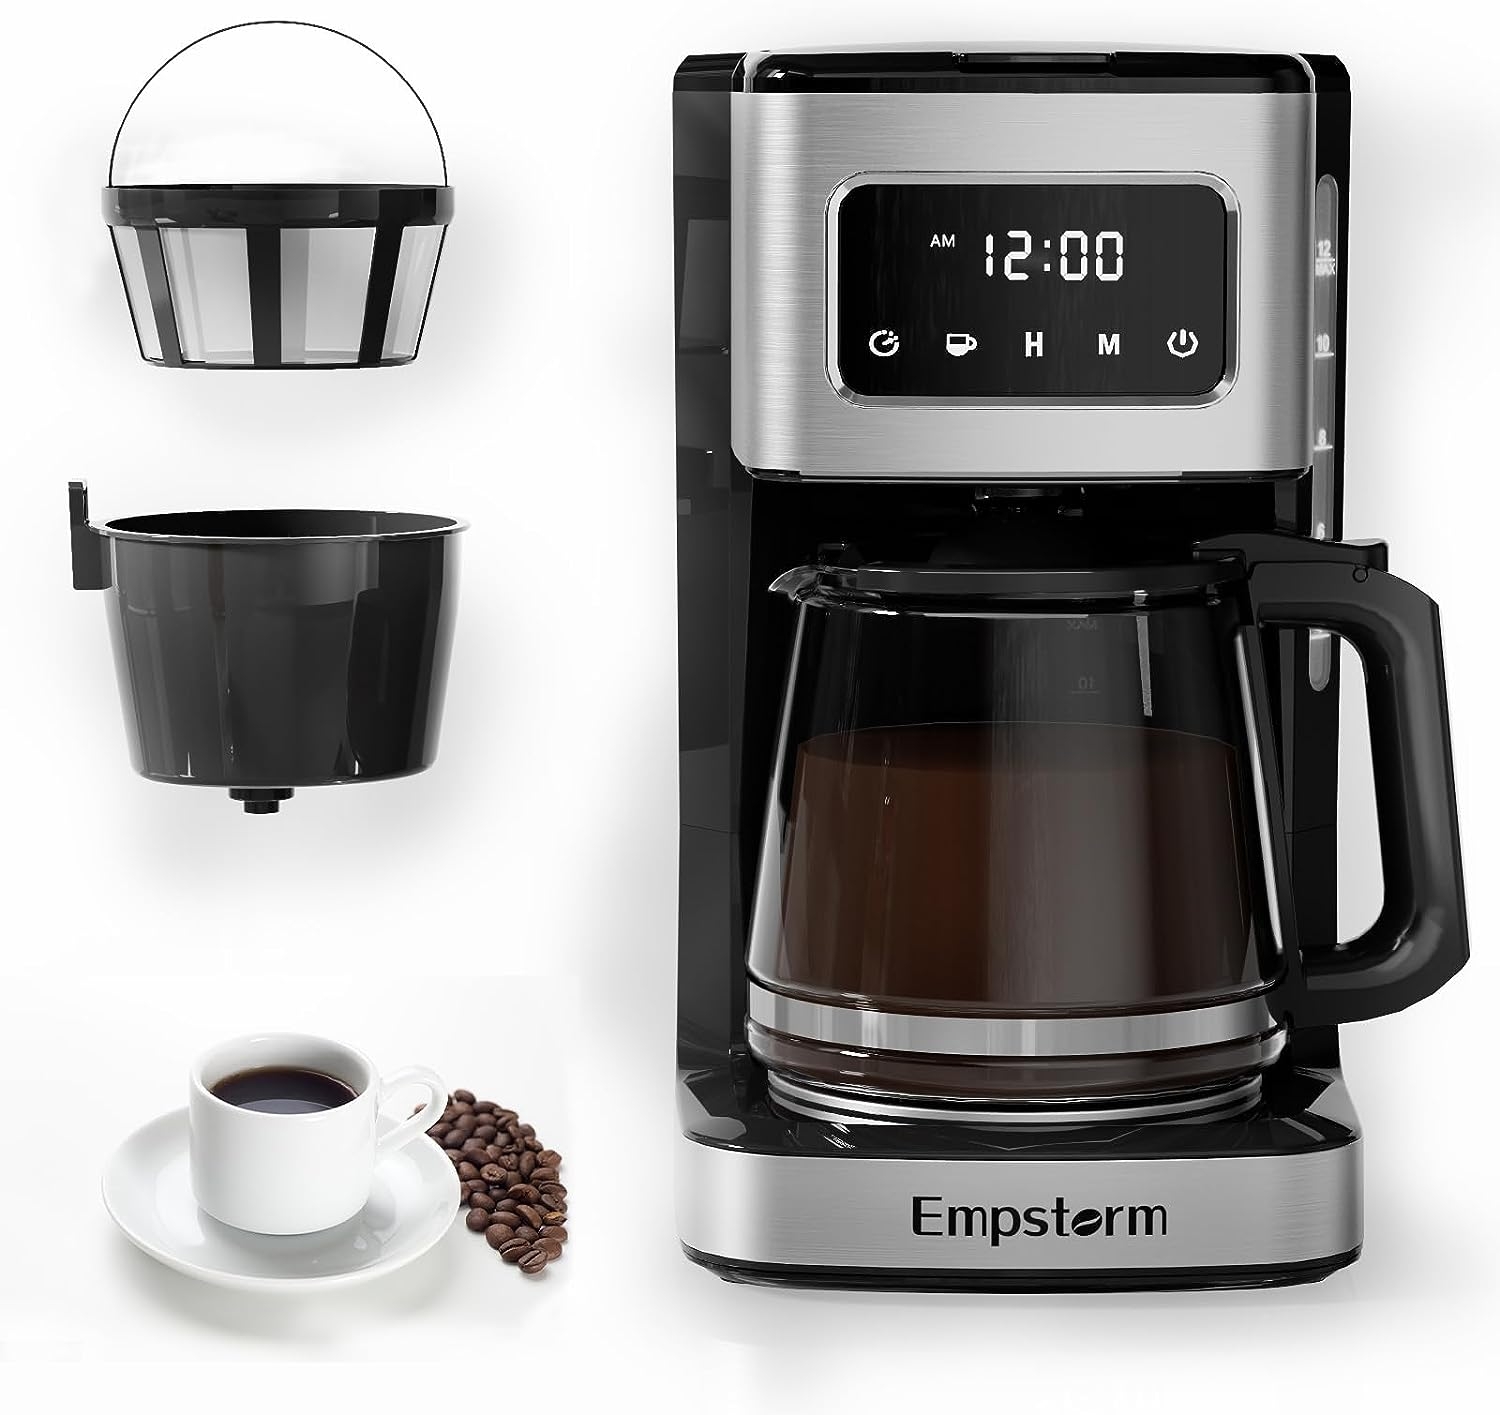 Bundle of Empstorm Espresso Machine 20 Bar, Espresso Coffee Maker